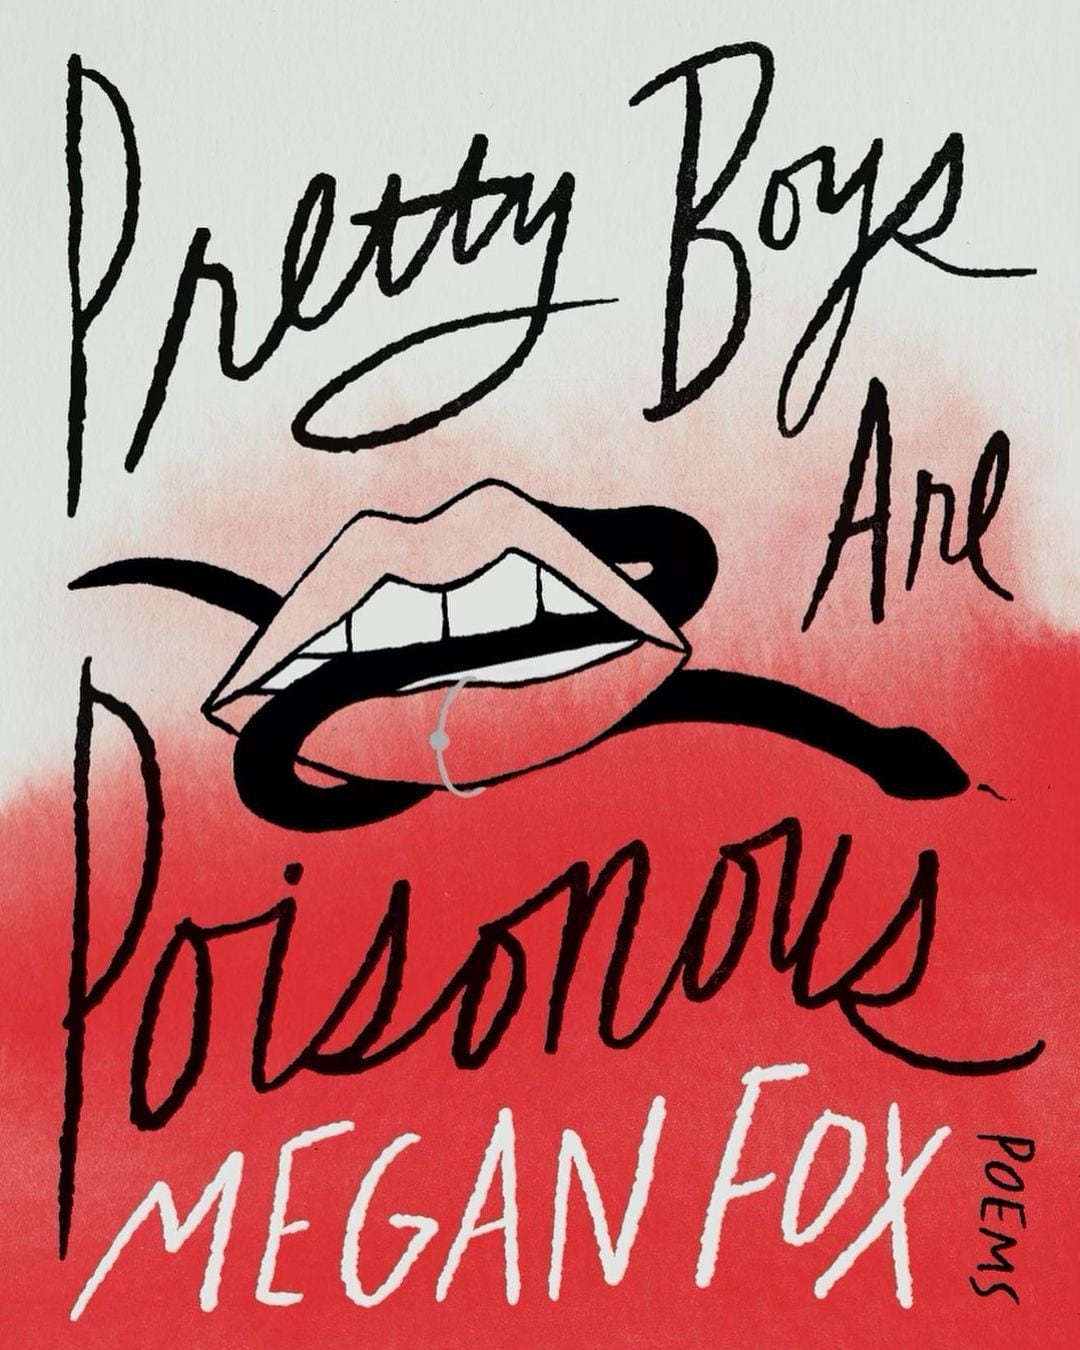 "Los chicos lindos son venenosos" llegará a las tiendas el 7 de noviembre
Foto: Instagram/Megan Fox